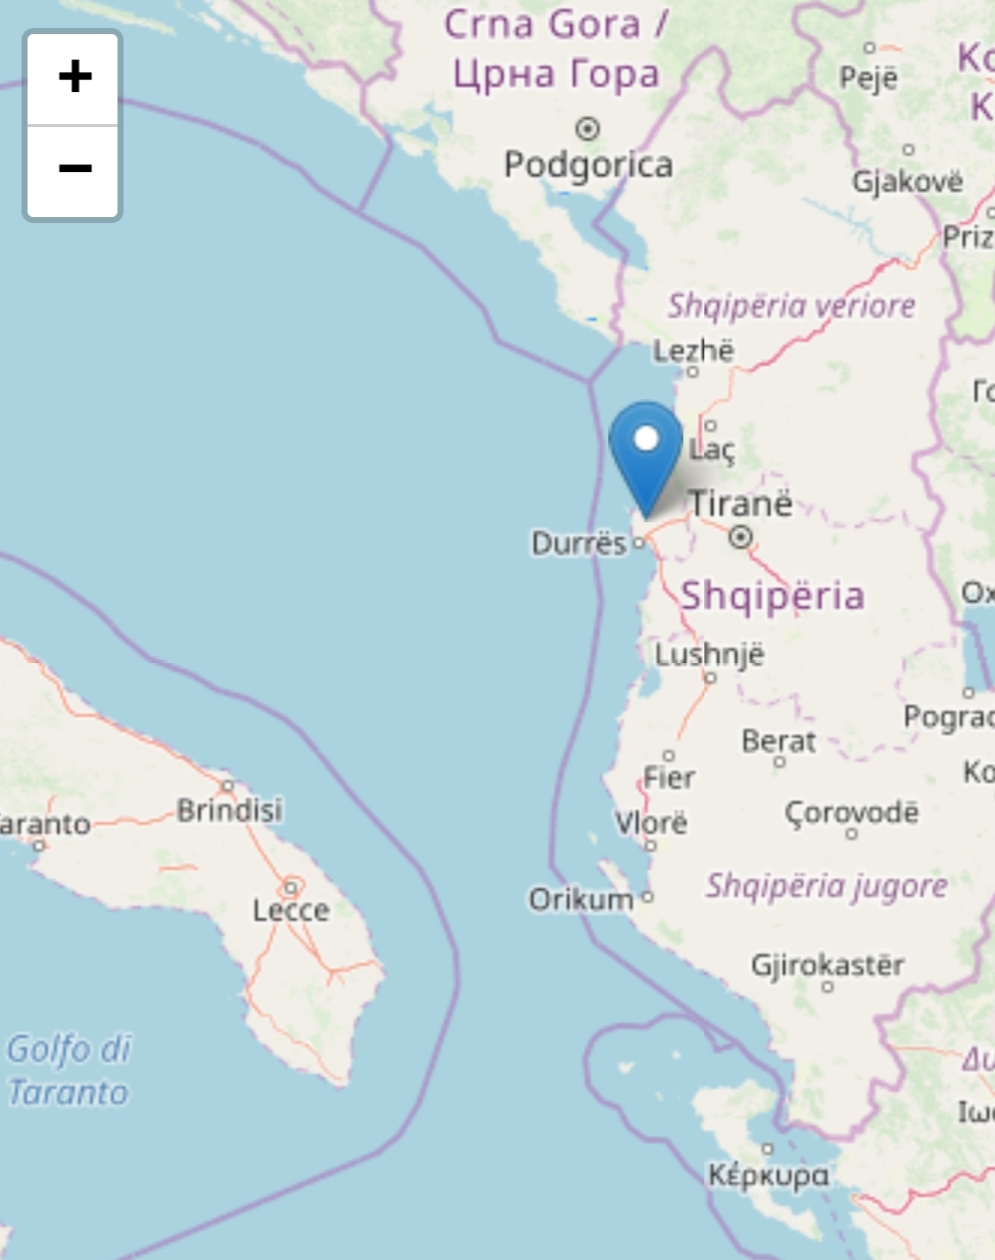 Violento terremoto nel cuore della notte sulla costa albanese: magnitudo 6,5